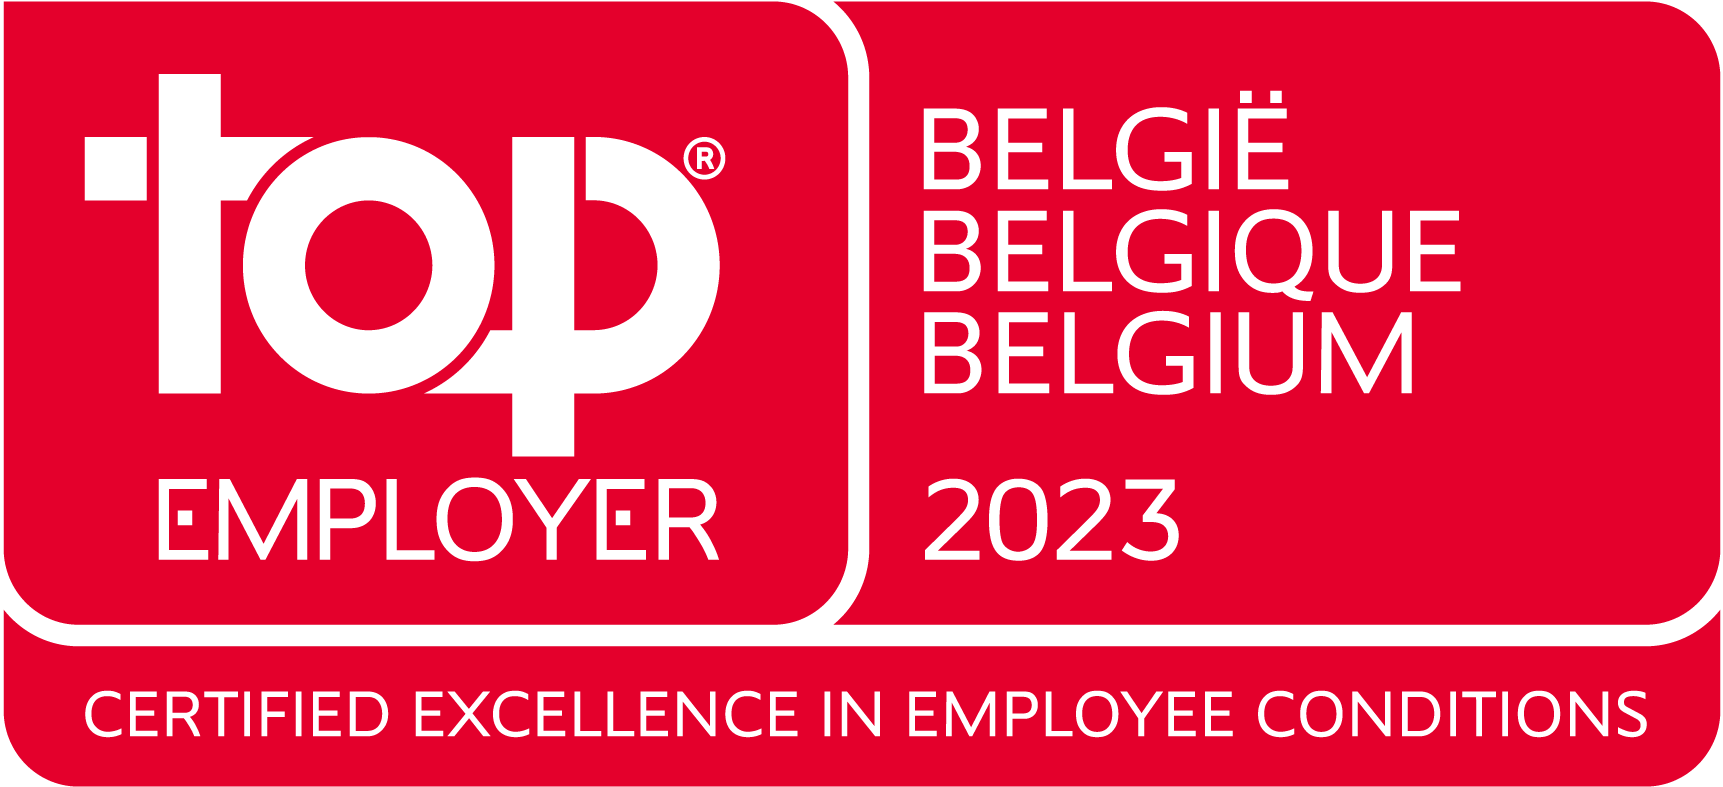 Top Employer Belgium 2023